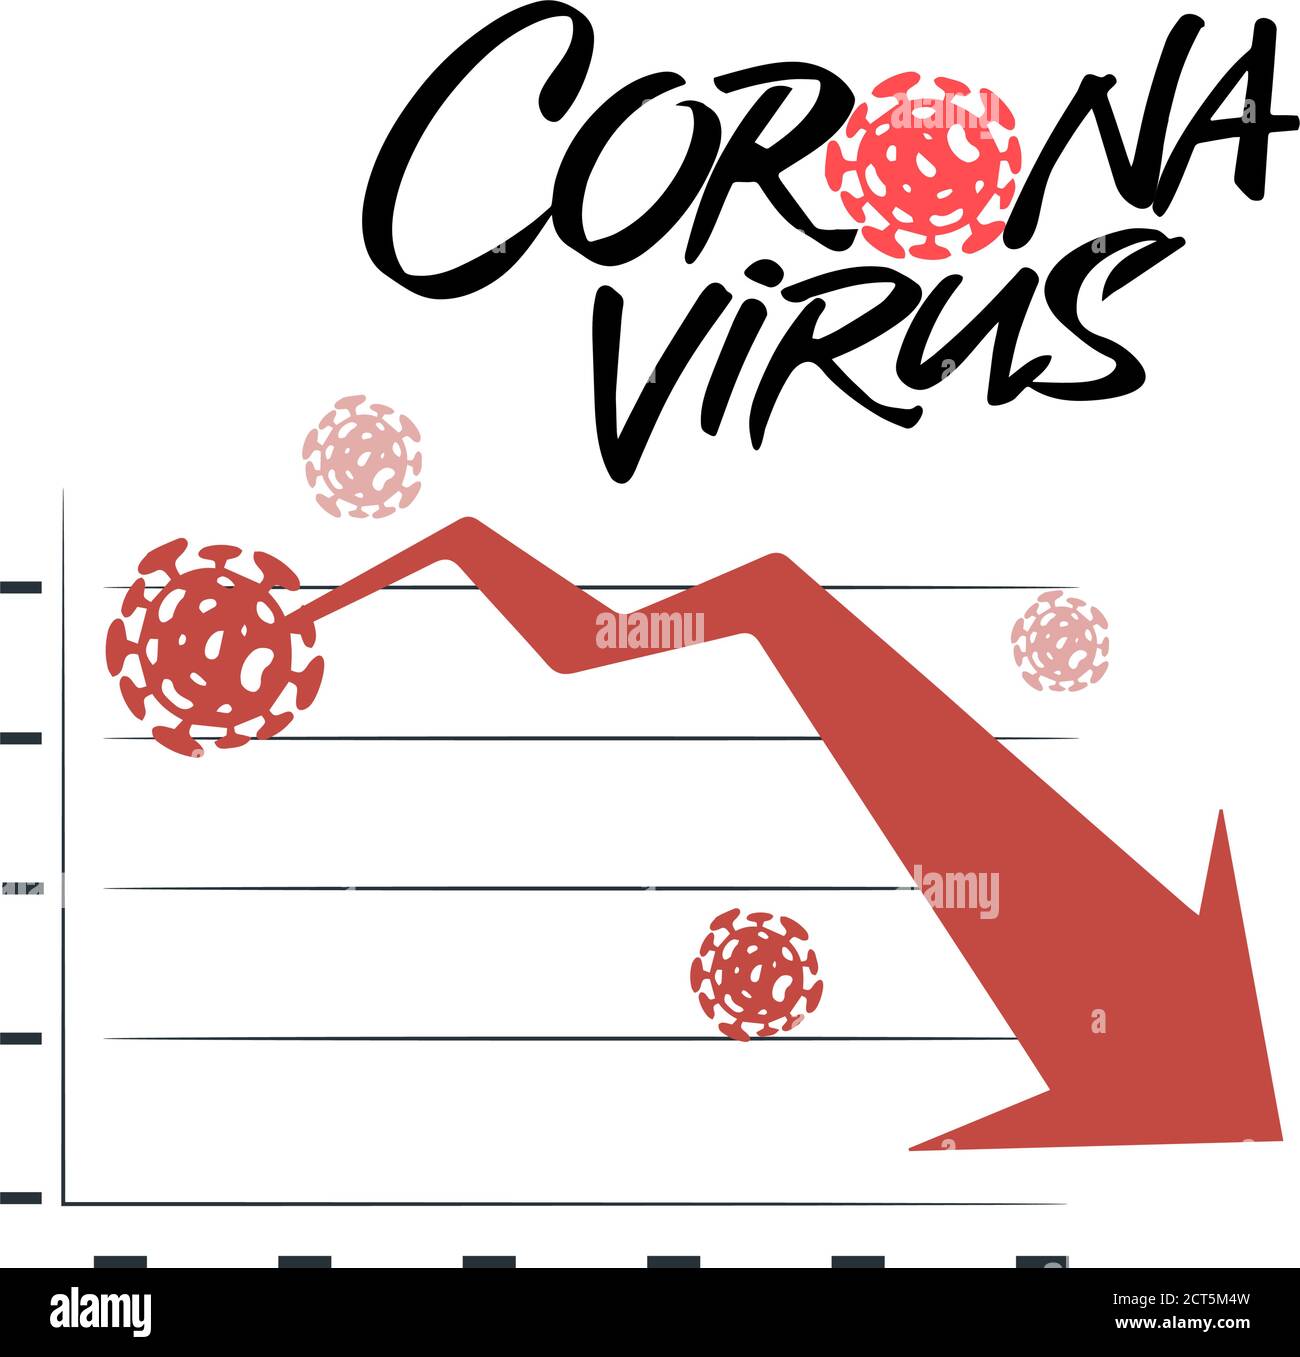 El impacto del coronavirus en la bolsa de valores y la economía mundial. El virus Covid-19 llega al mercado. Las acciones caen. Los mercados se desploman. Consecuencias económicas Ilustración del Vector